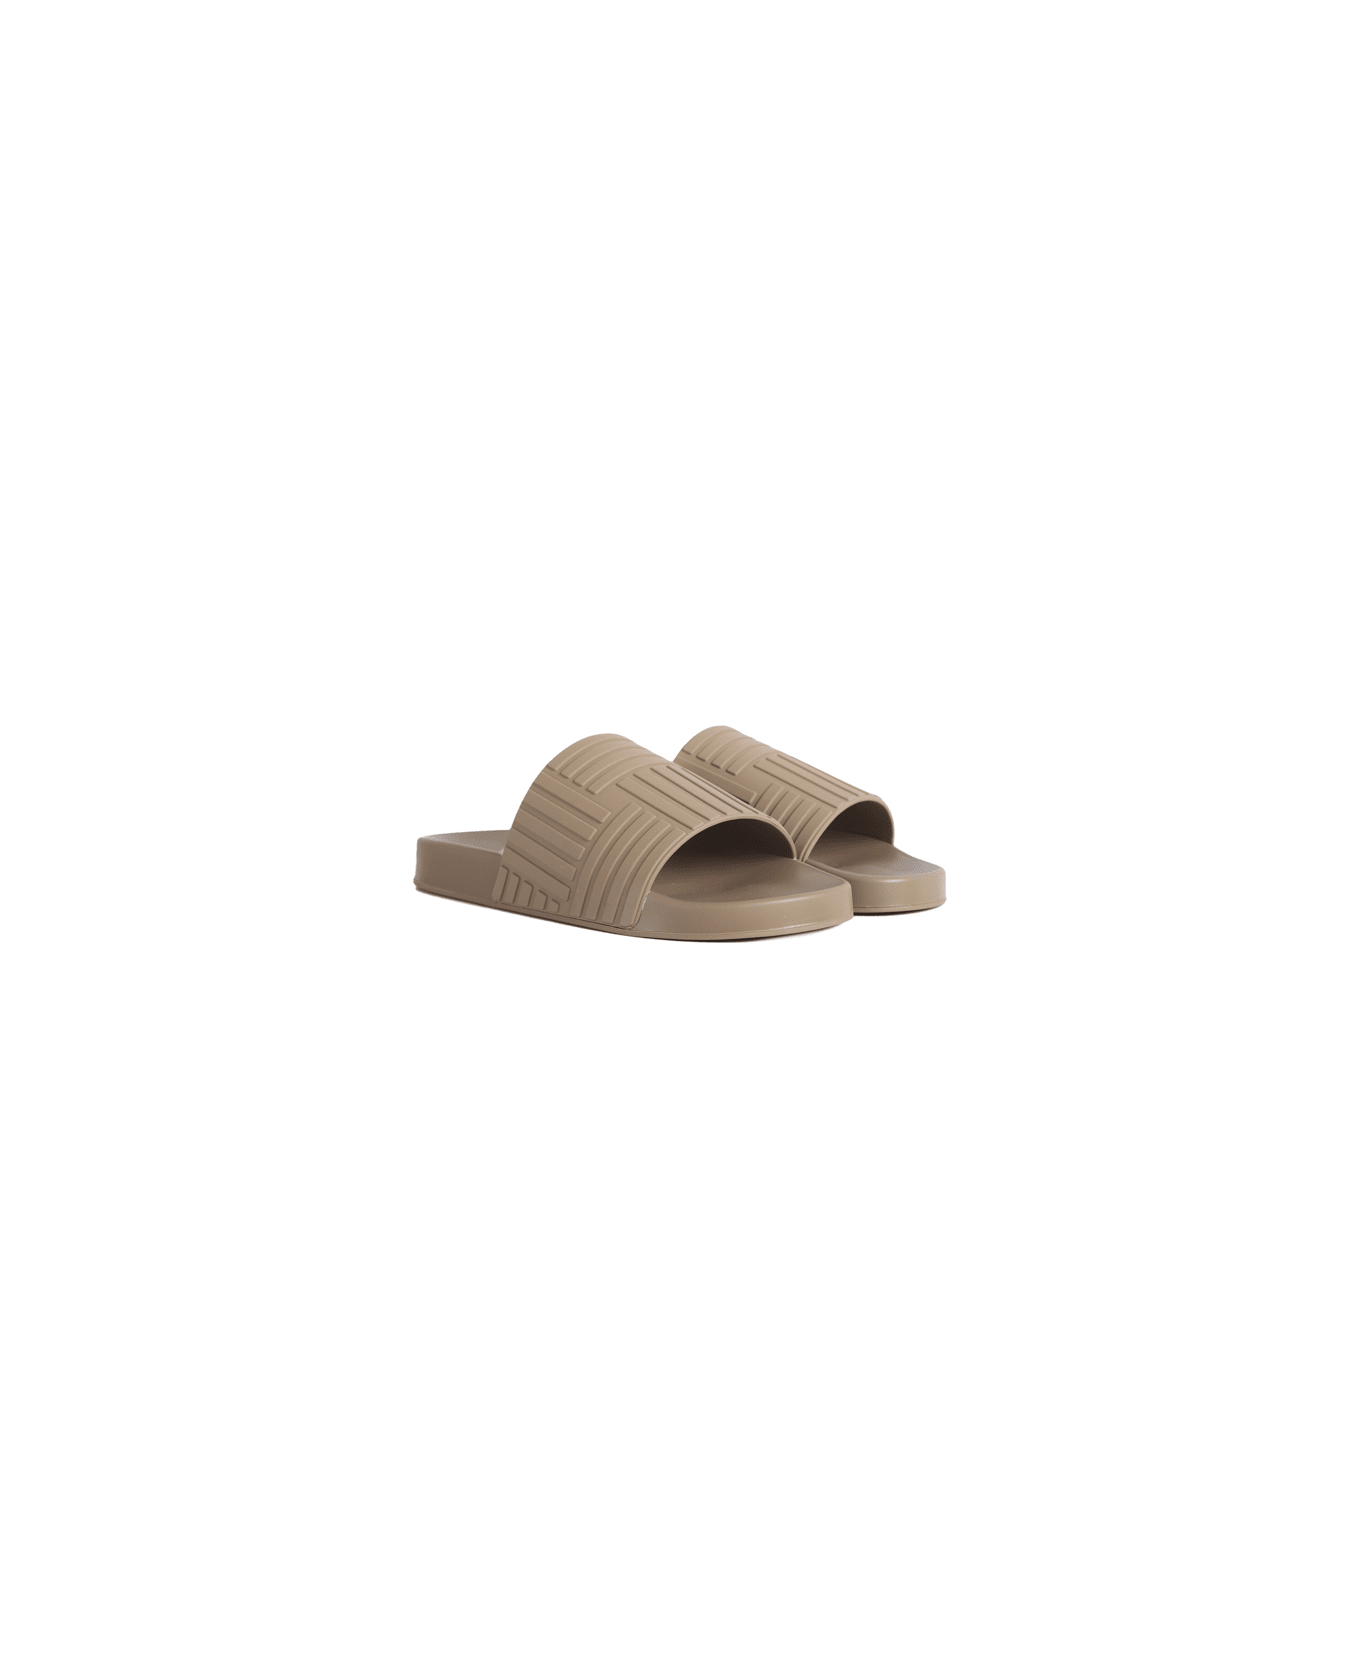 Bottega Veneta Rubber Sandals - Jute